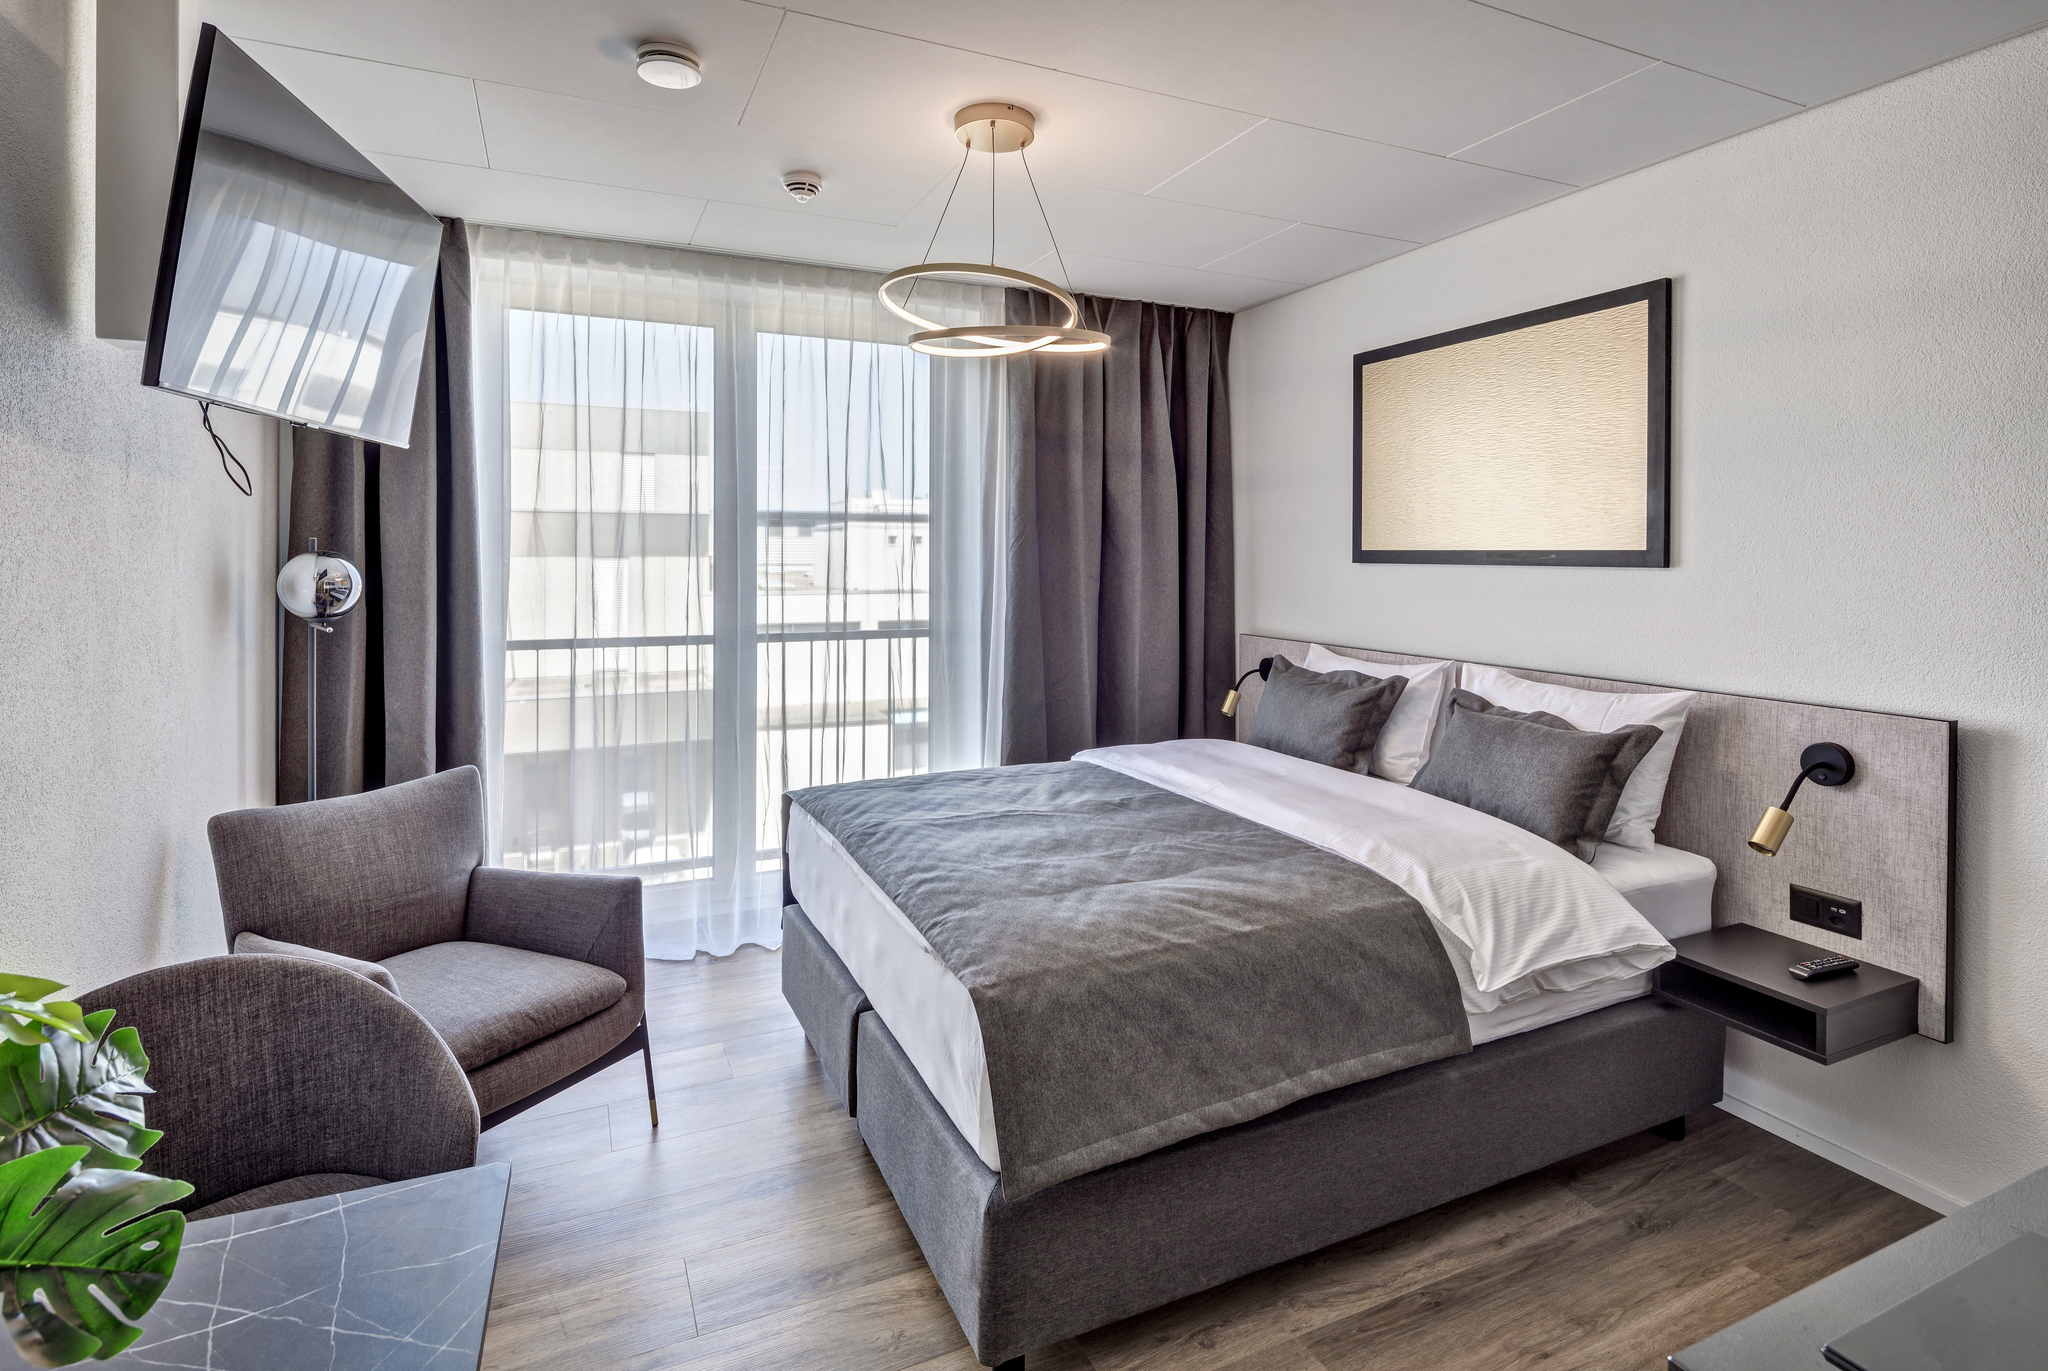 Aufnahme eines Schlafzimmers der Serviced Apartments in der Schweiz mit großem Bett, TV und Sessel vor einer hellen Fensterfront